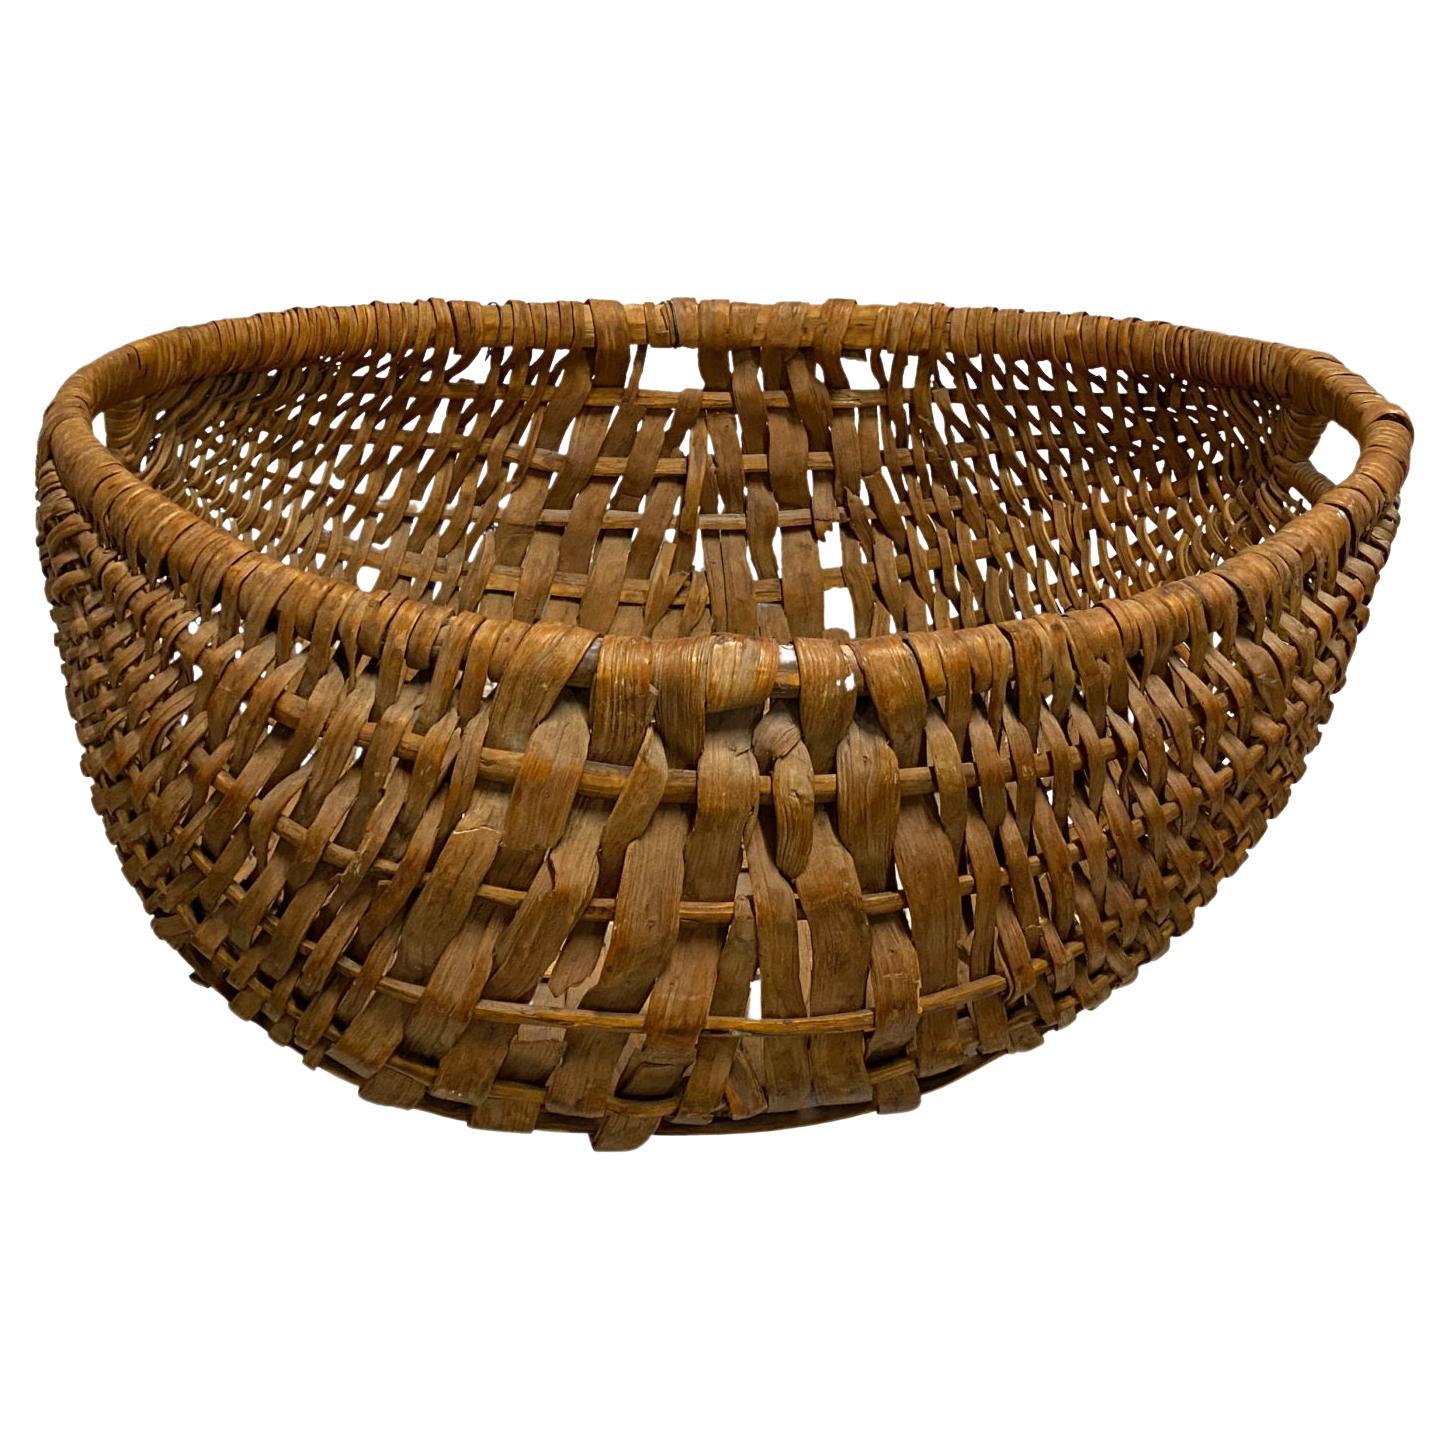 Antique Spale Gathering Basket